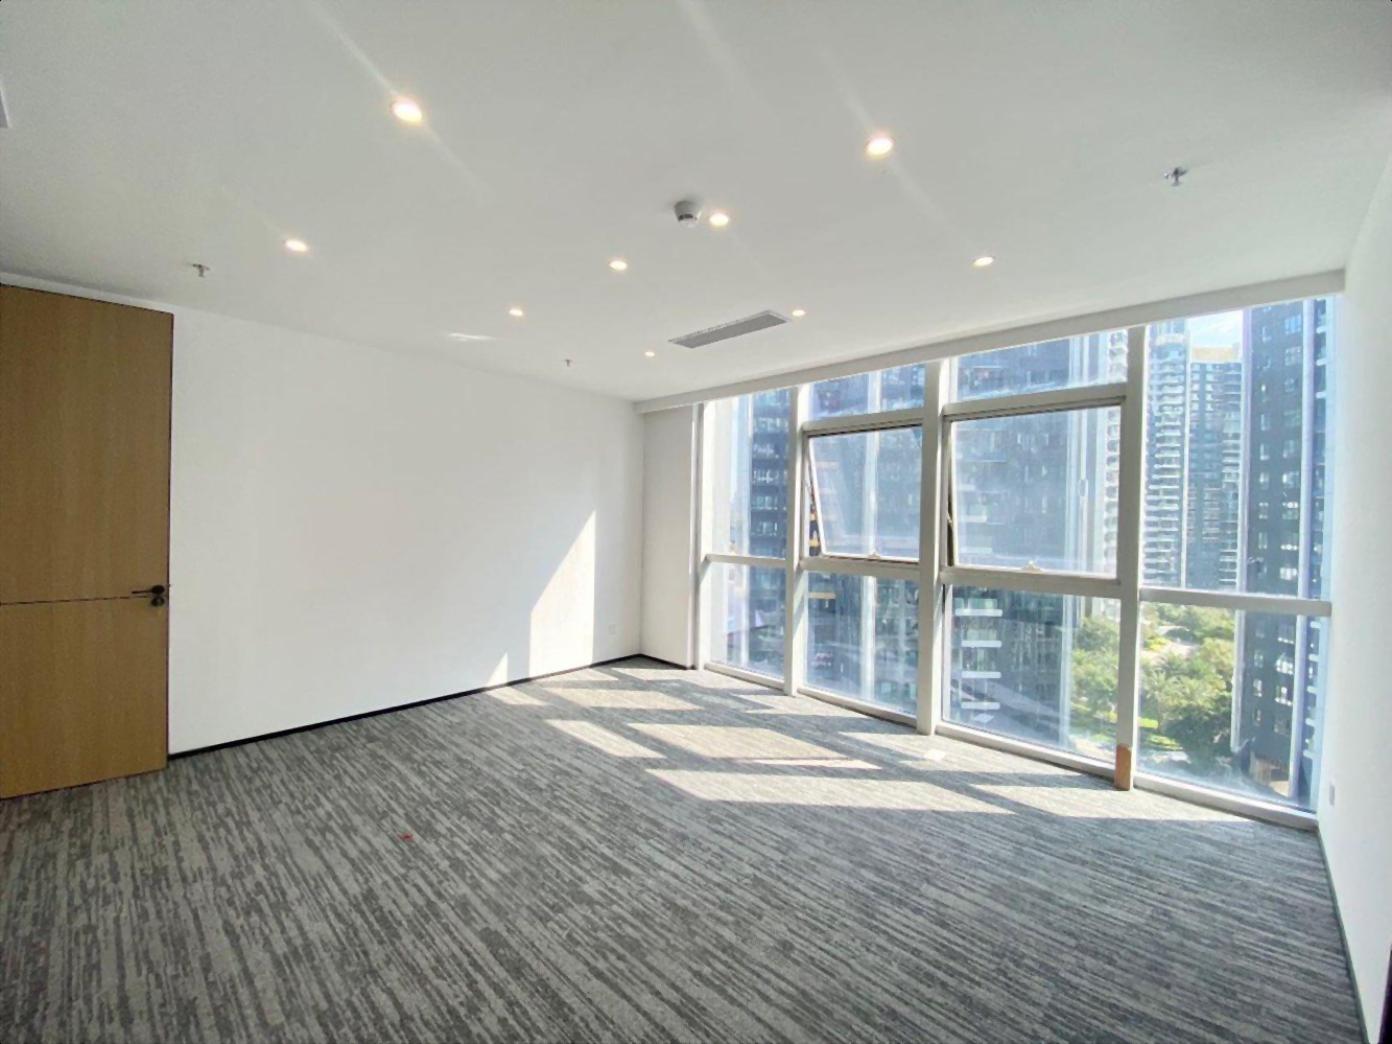 金骐智谷大厦全新装修300平电梯口户型方正塘朗地铁口